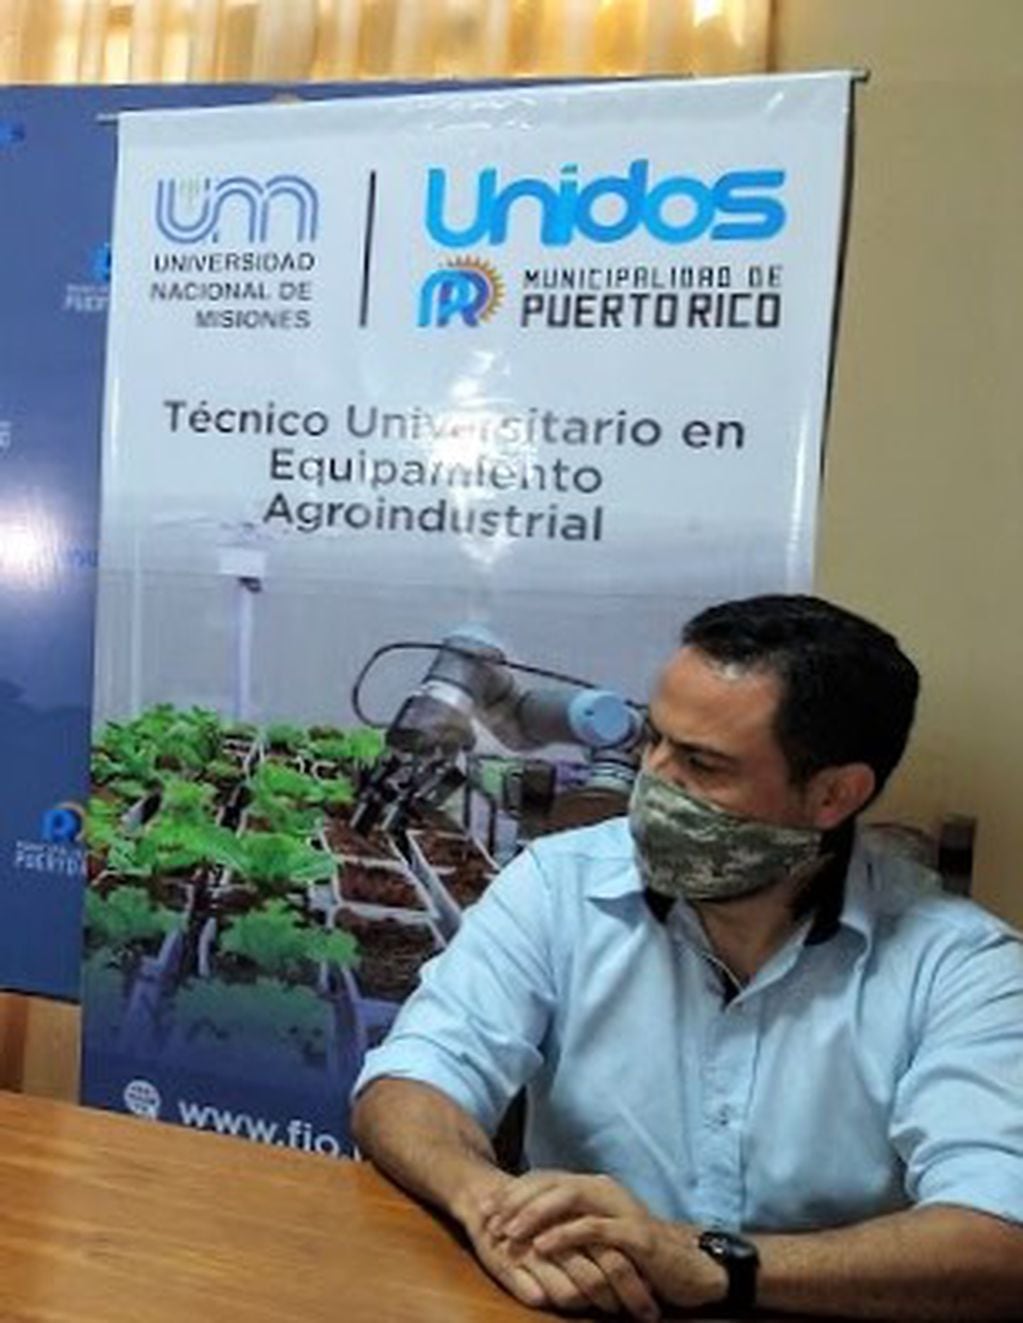 Puerto Rico: se encuentra abierta la inscripción a la Tecnicatura Universitaria en Equipamiento Agroindustrial